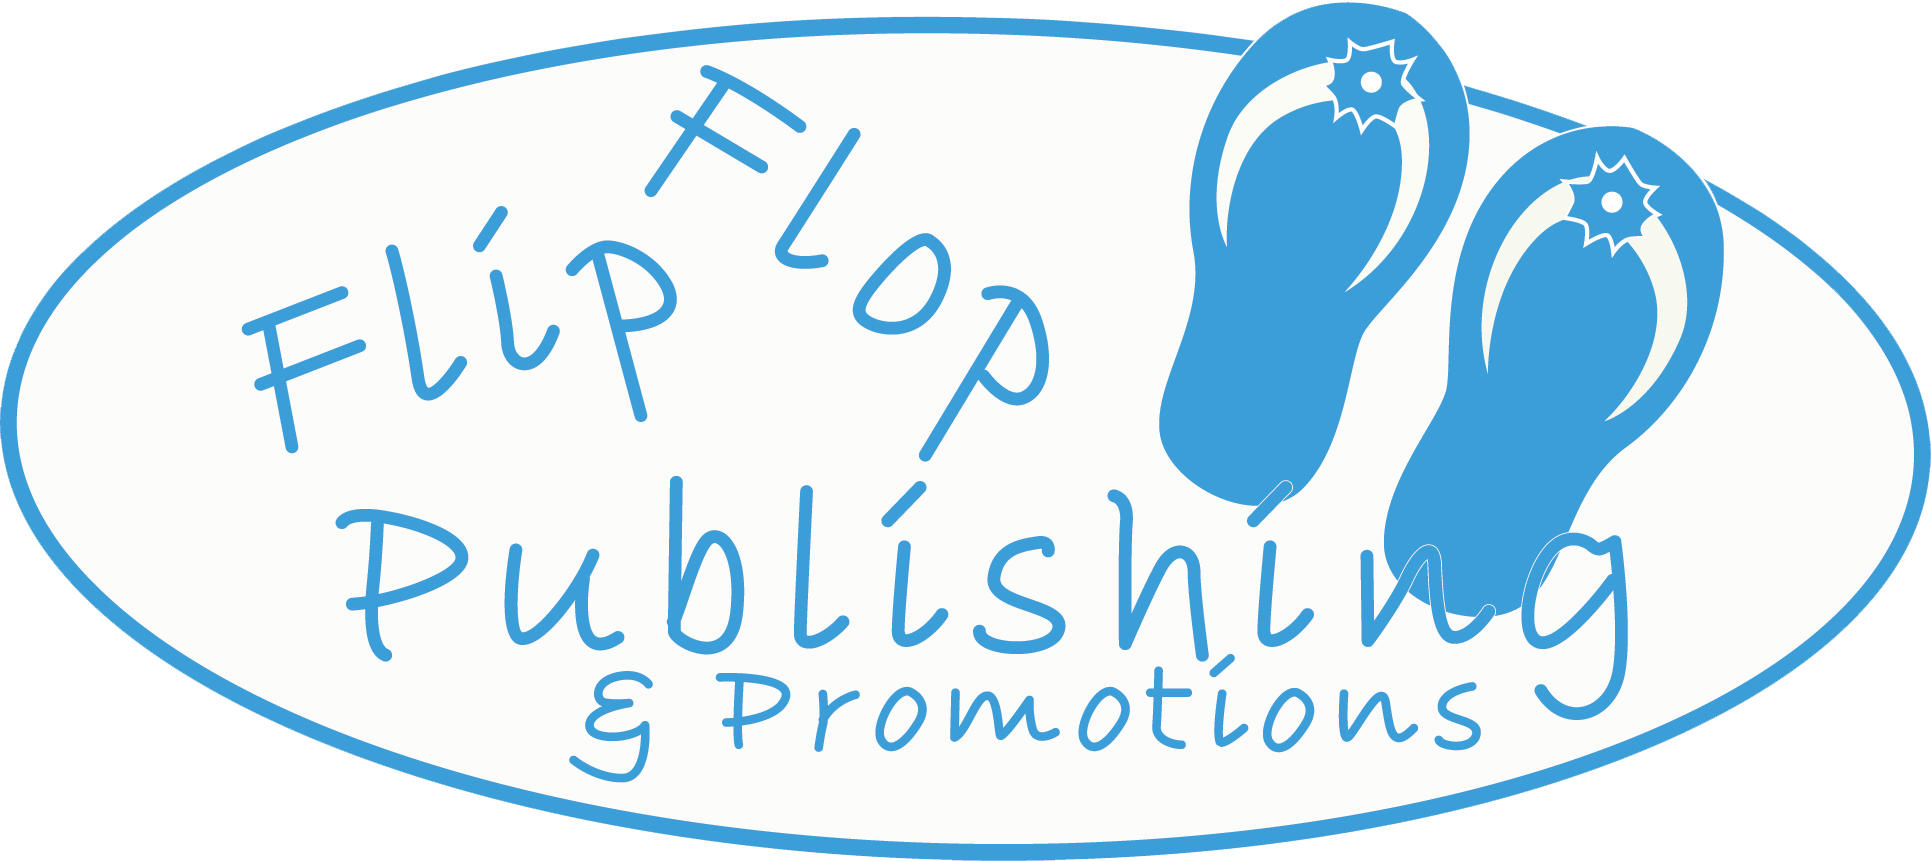 Flip Flop Publishing & Promotions's Logo